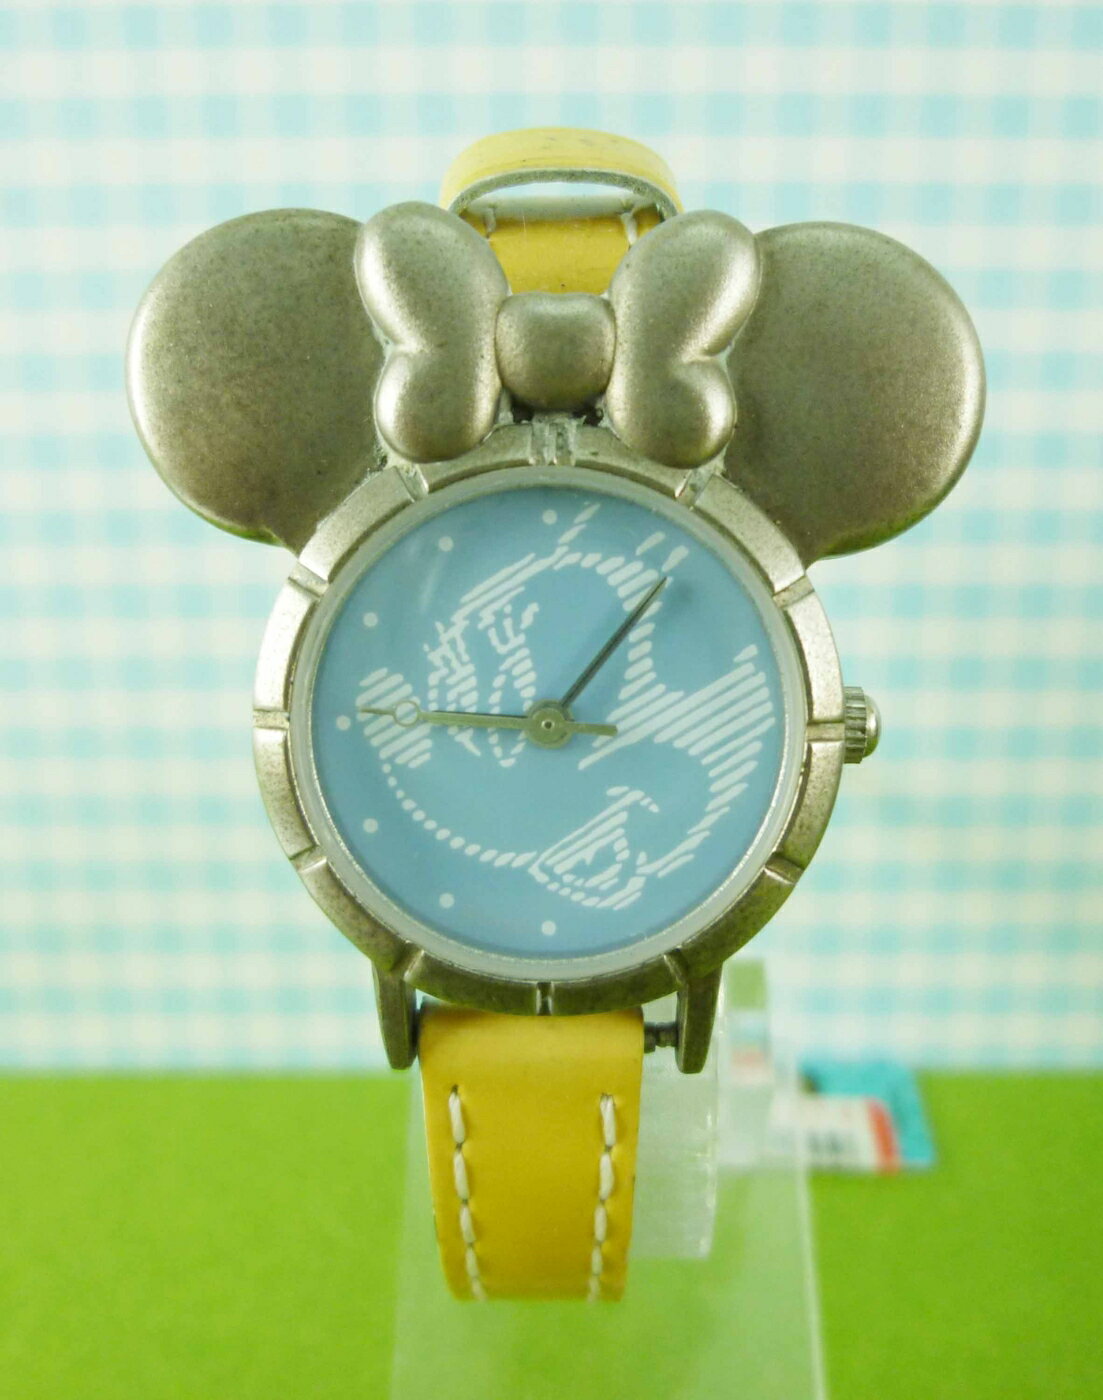 【震撼精品百貨】米奇/米妮 Micky Mouse 造型手錶-米奇大頭圖案-黃色 震撼日式精品百貨